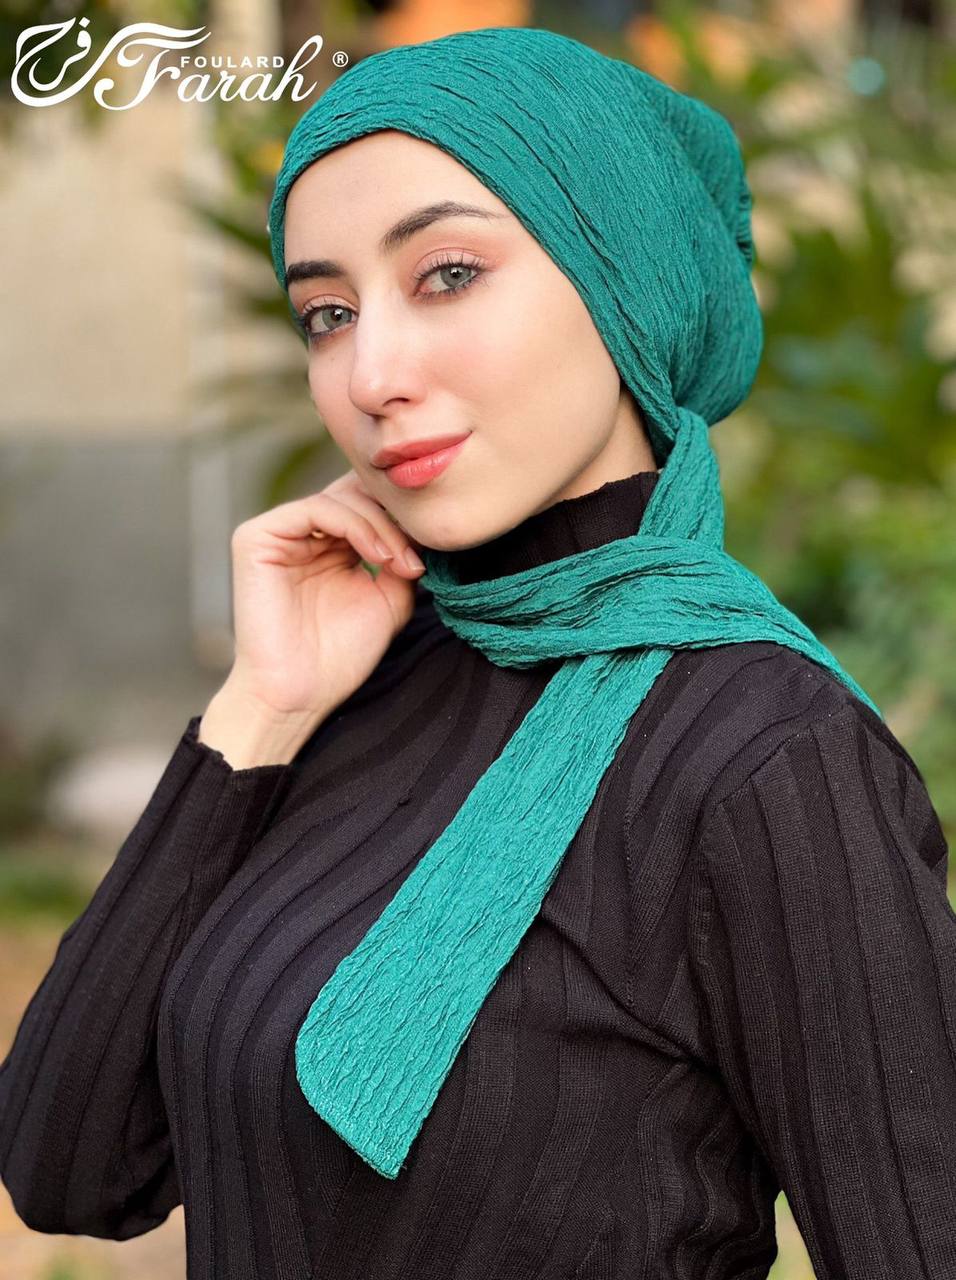 Elegant Pleated Turban Hijab - Stylish Headwrap for Modest Fashion - Blue Chill